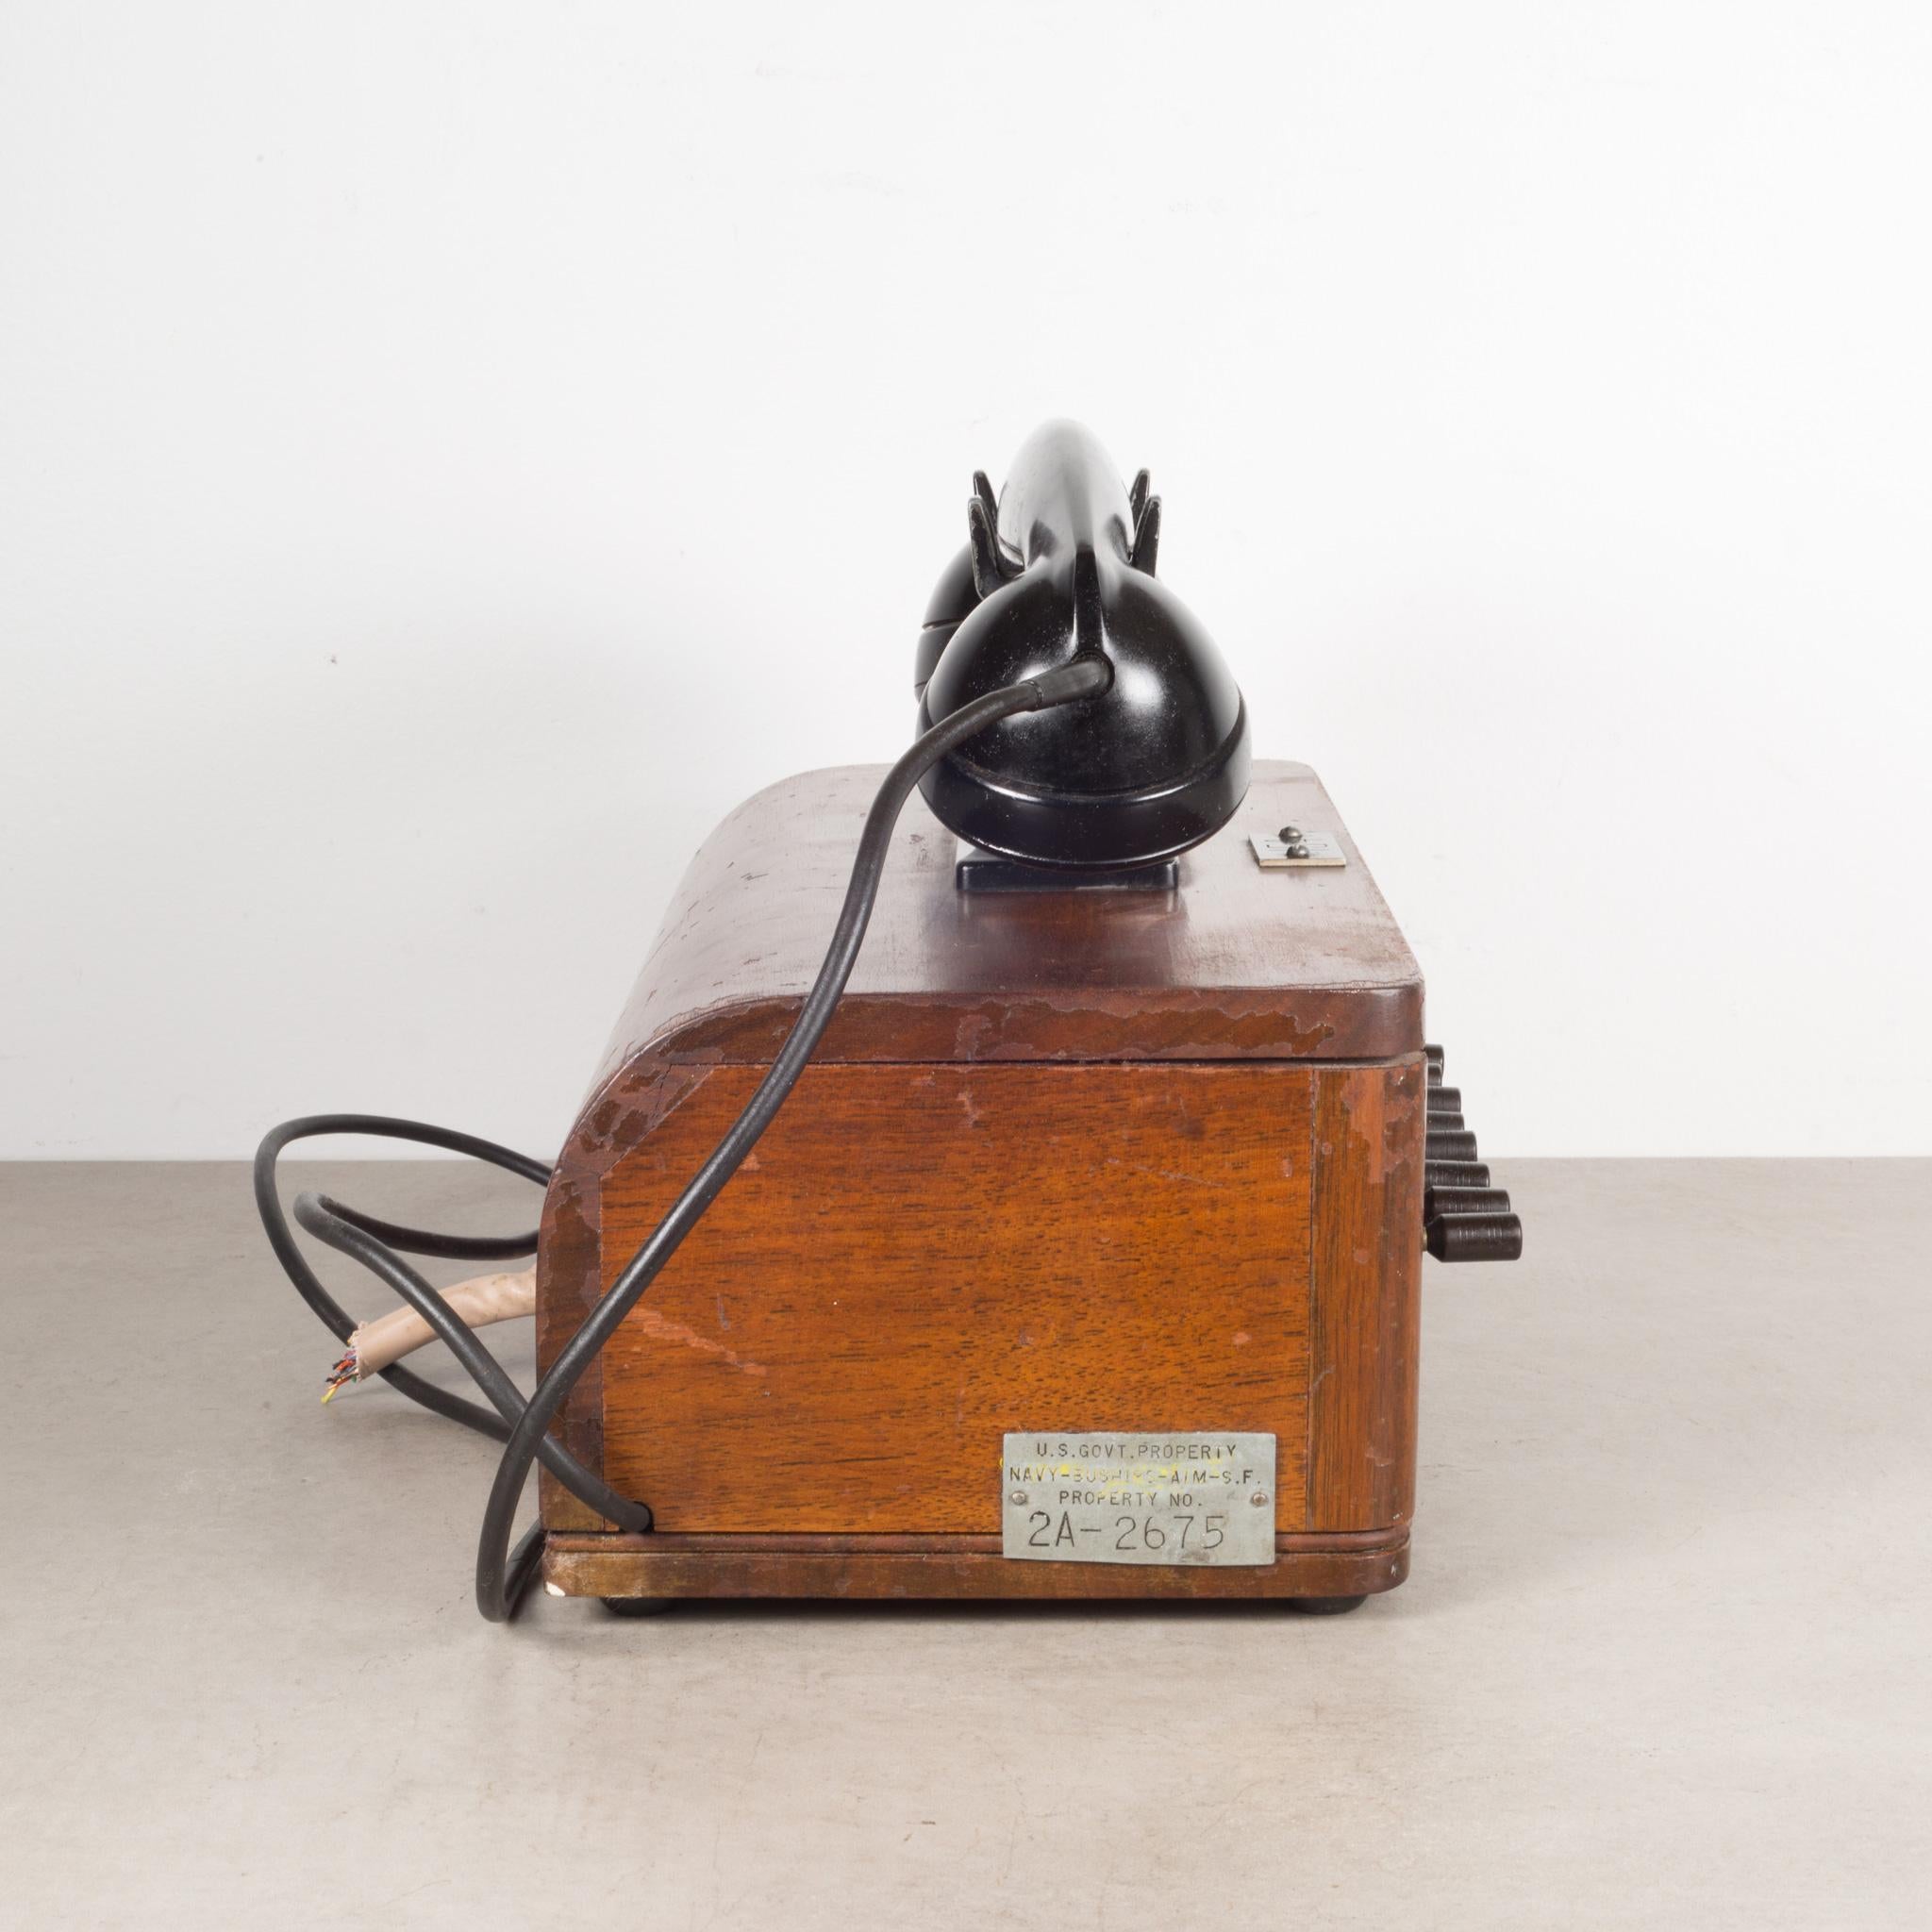 20th Century Antique World War ll Era US Navy Bakelite Switch Board Phone, c.1940